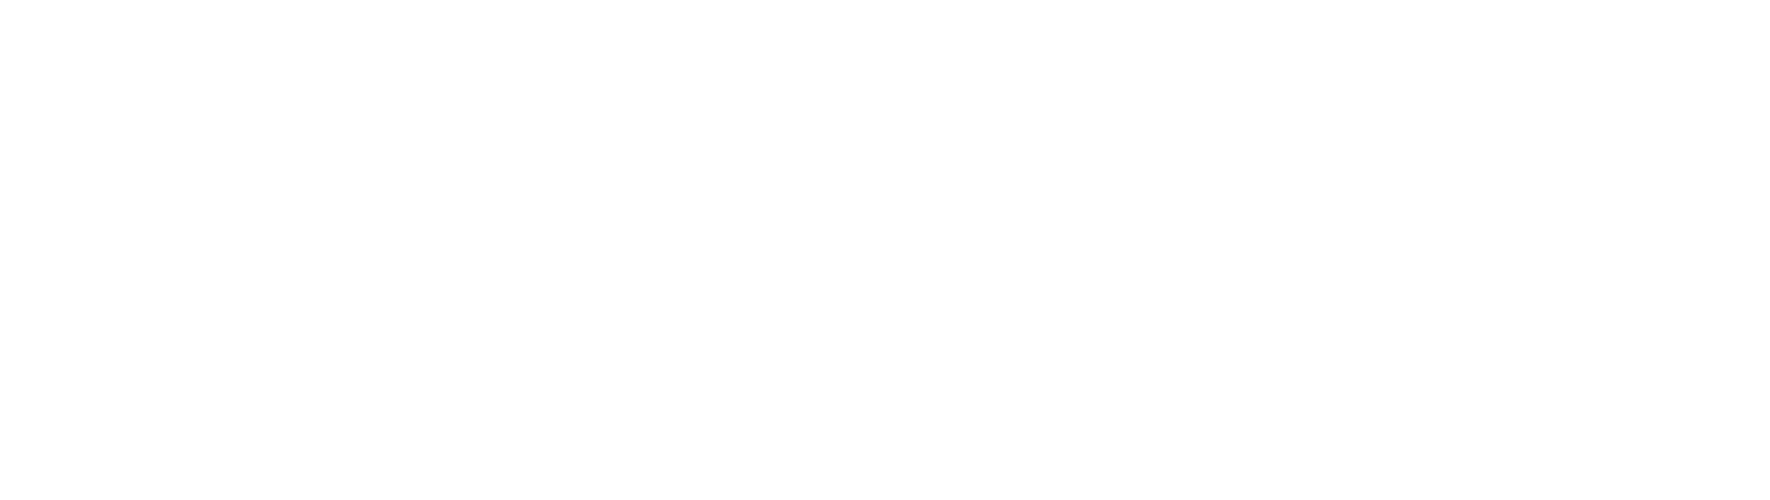 Do Design